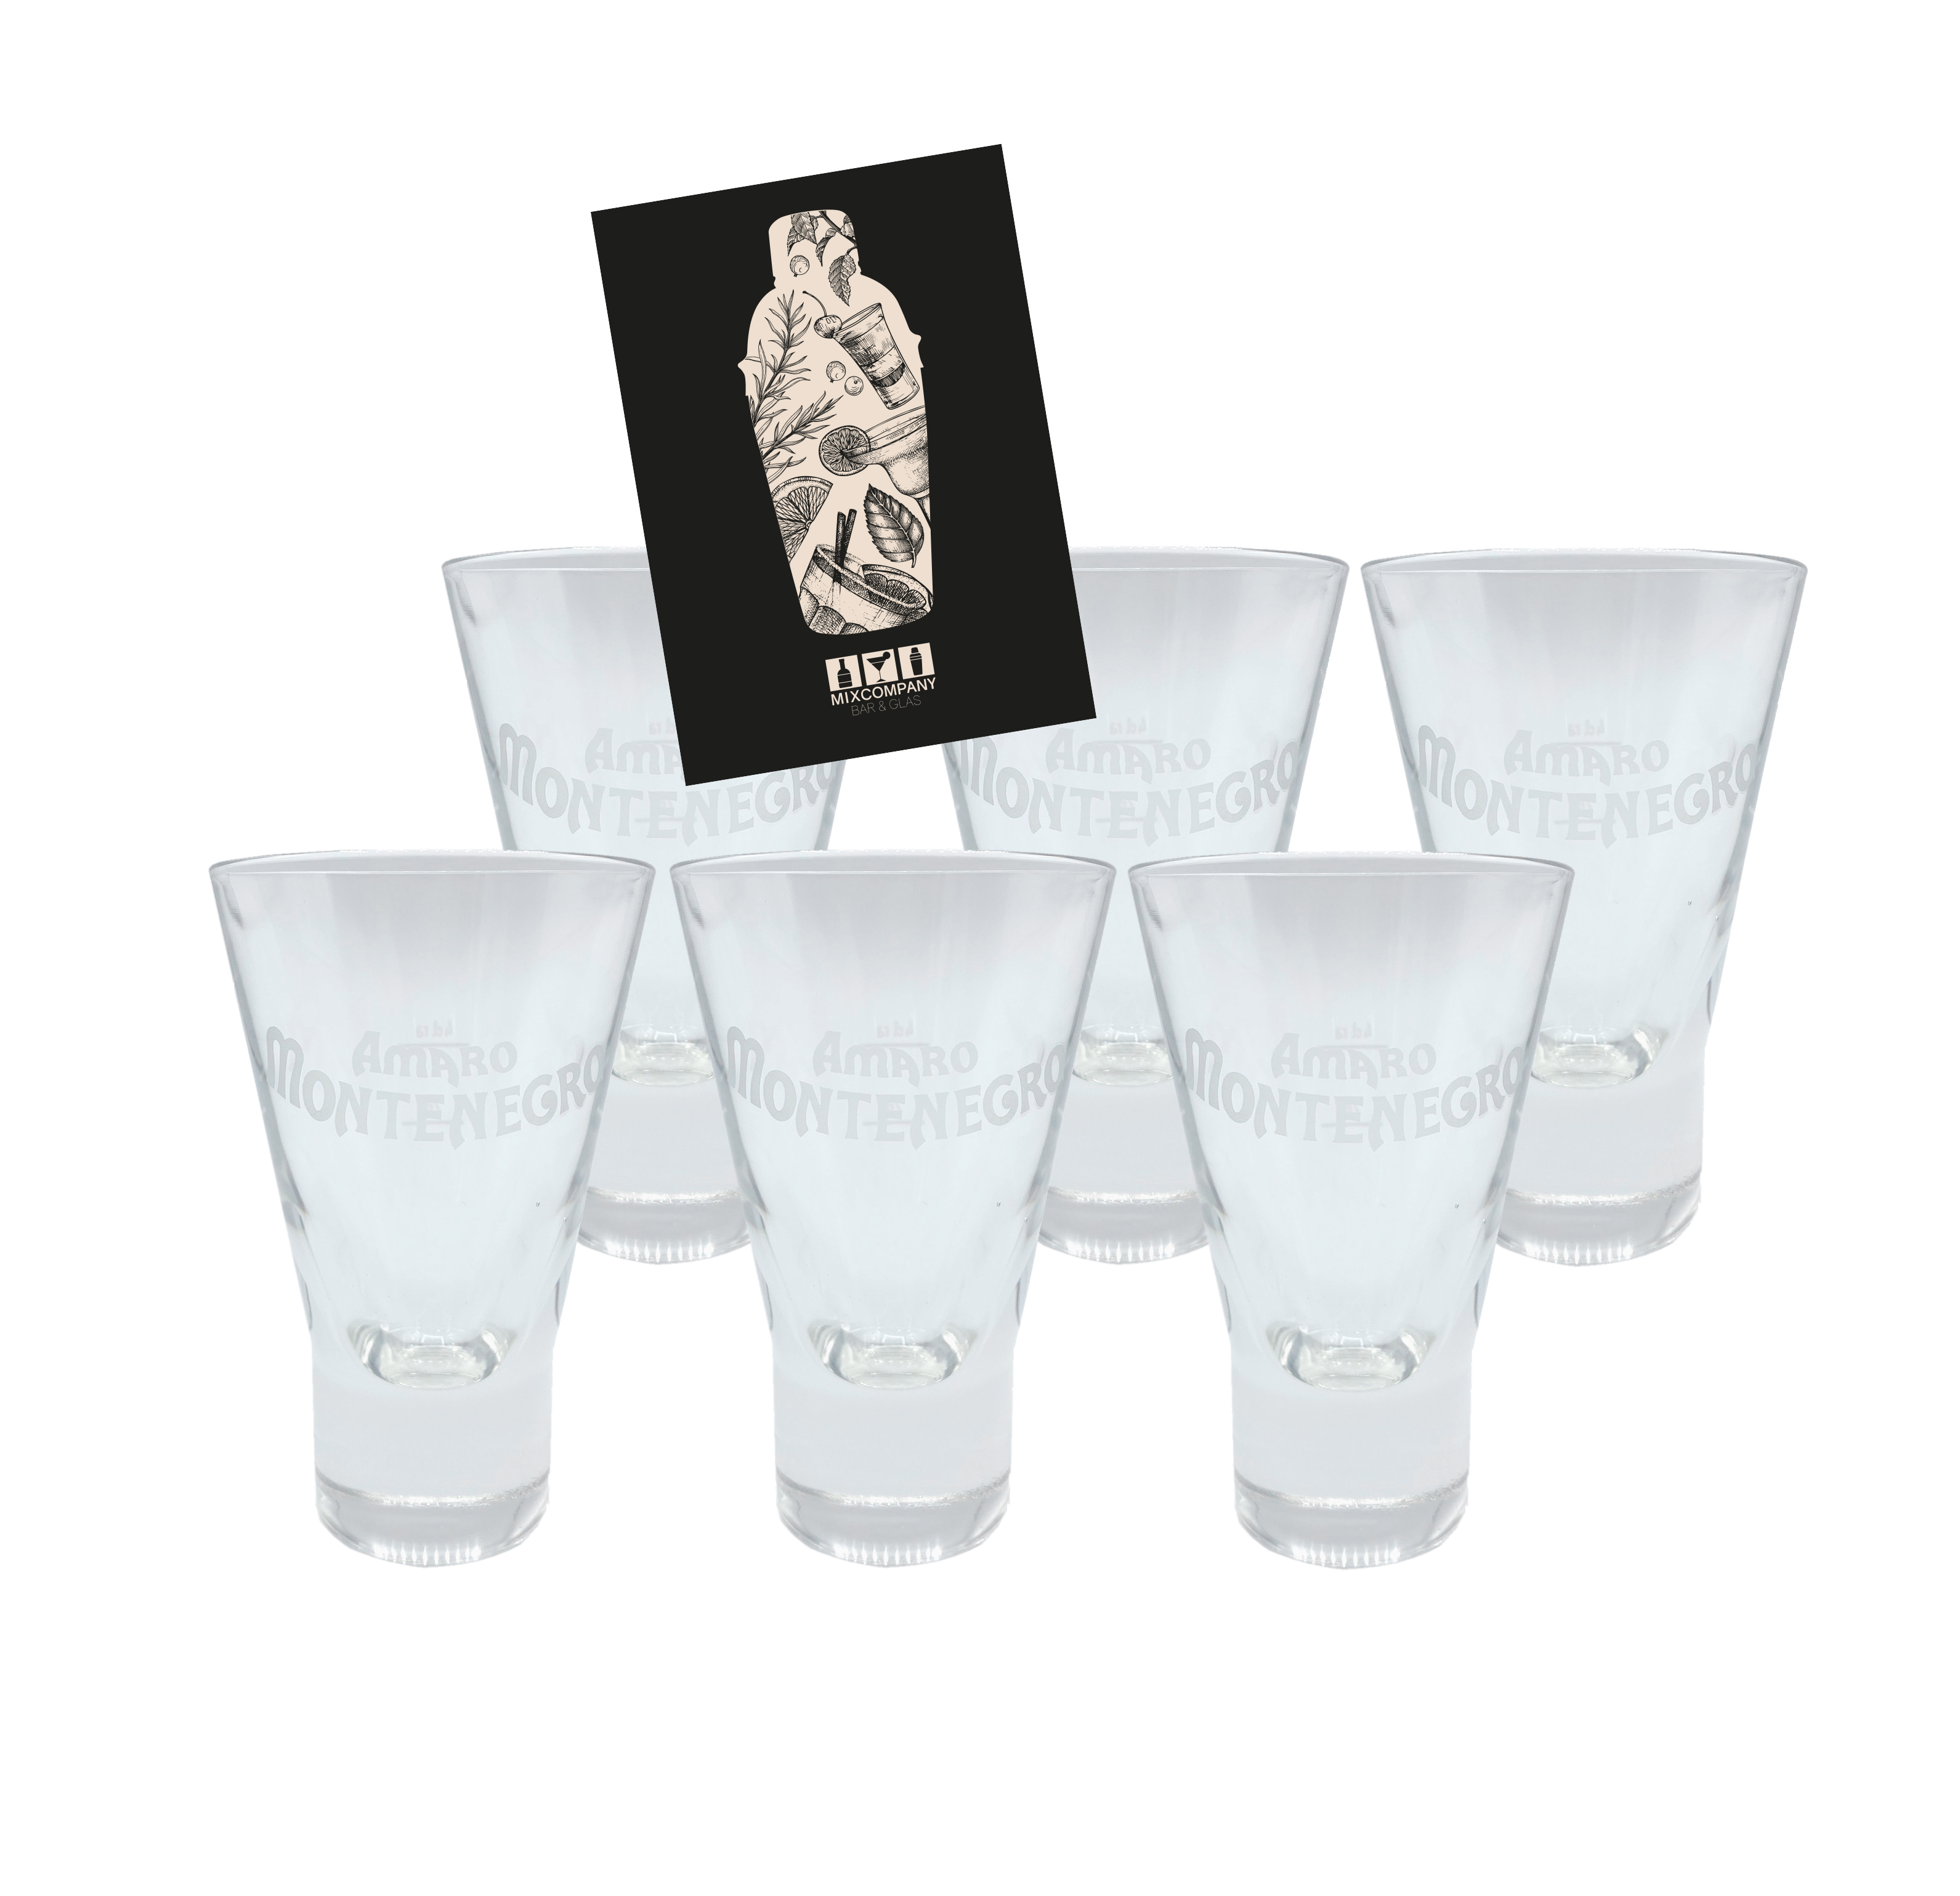 Amaro Montenegro Glas Gläser Set - 6x Gläser geeicht 2cl/4cl 